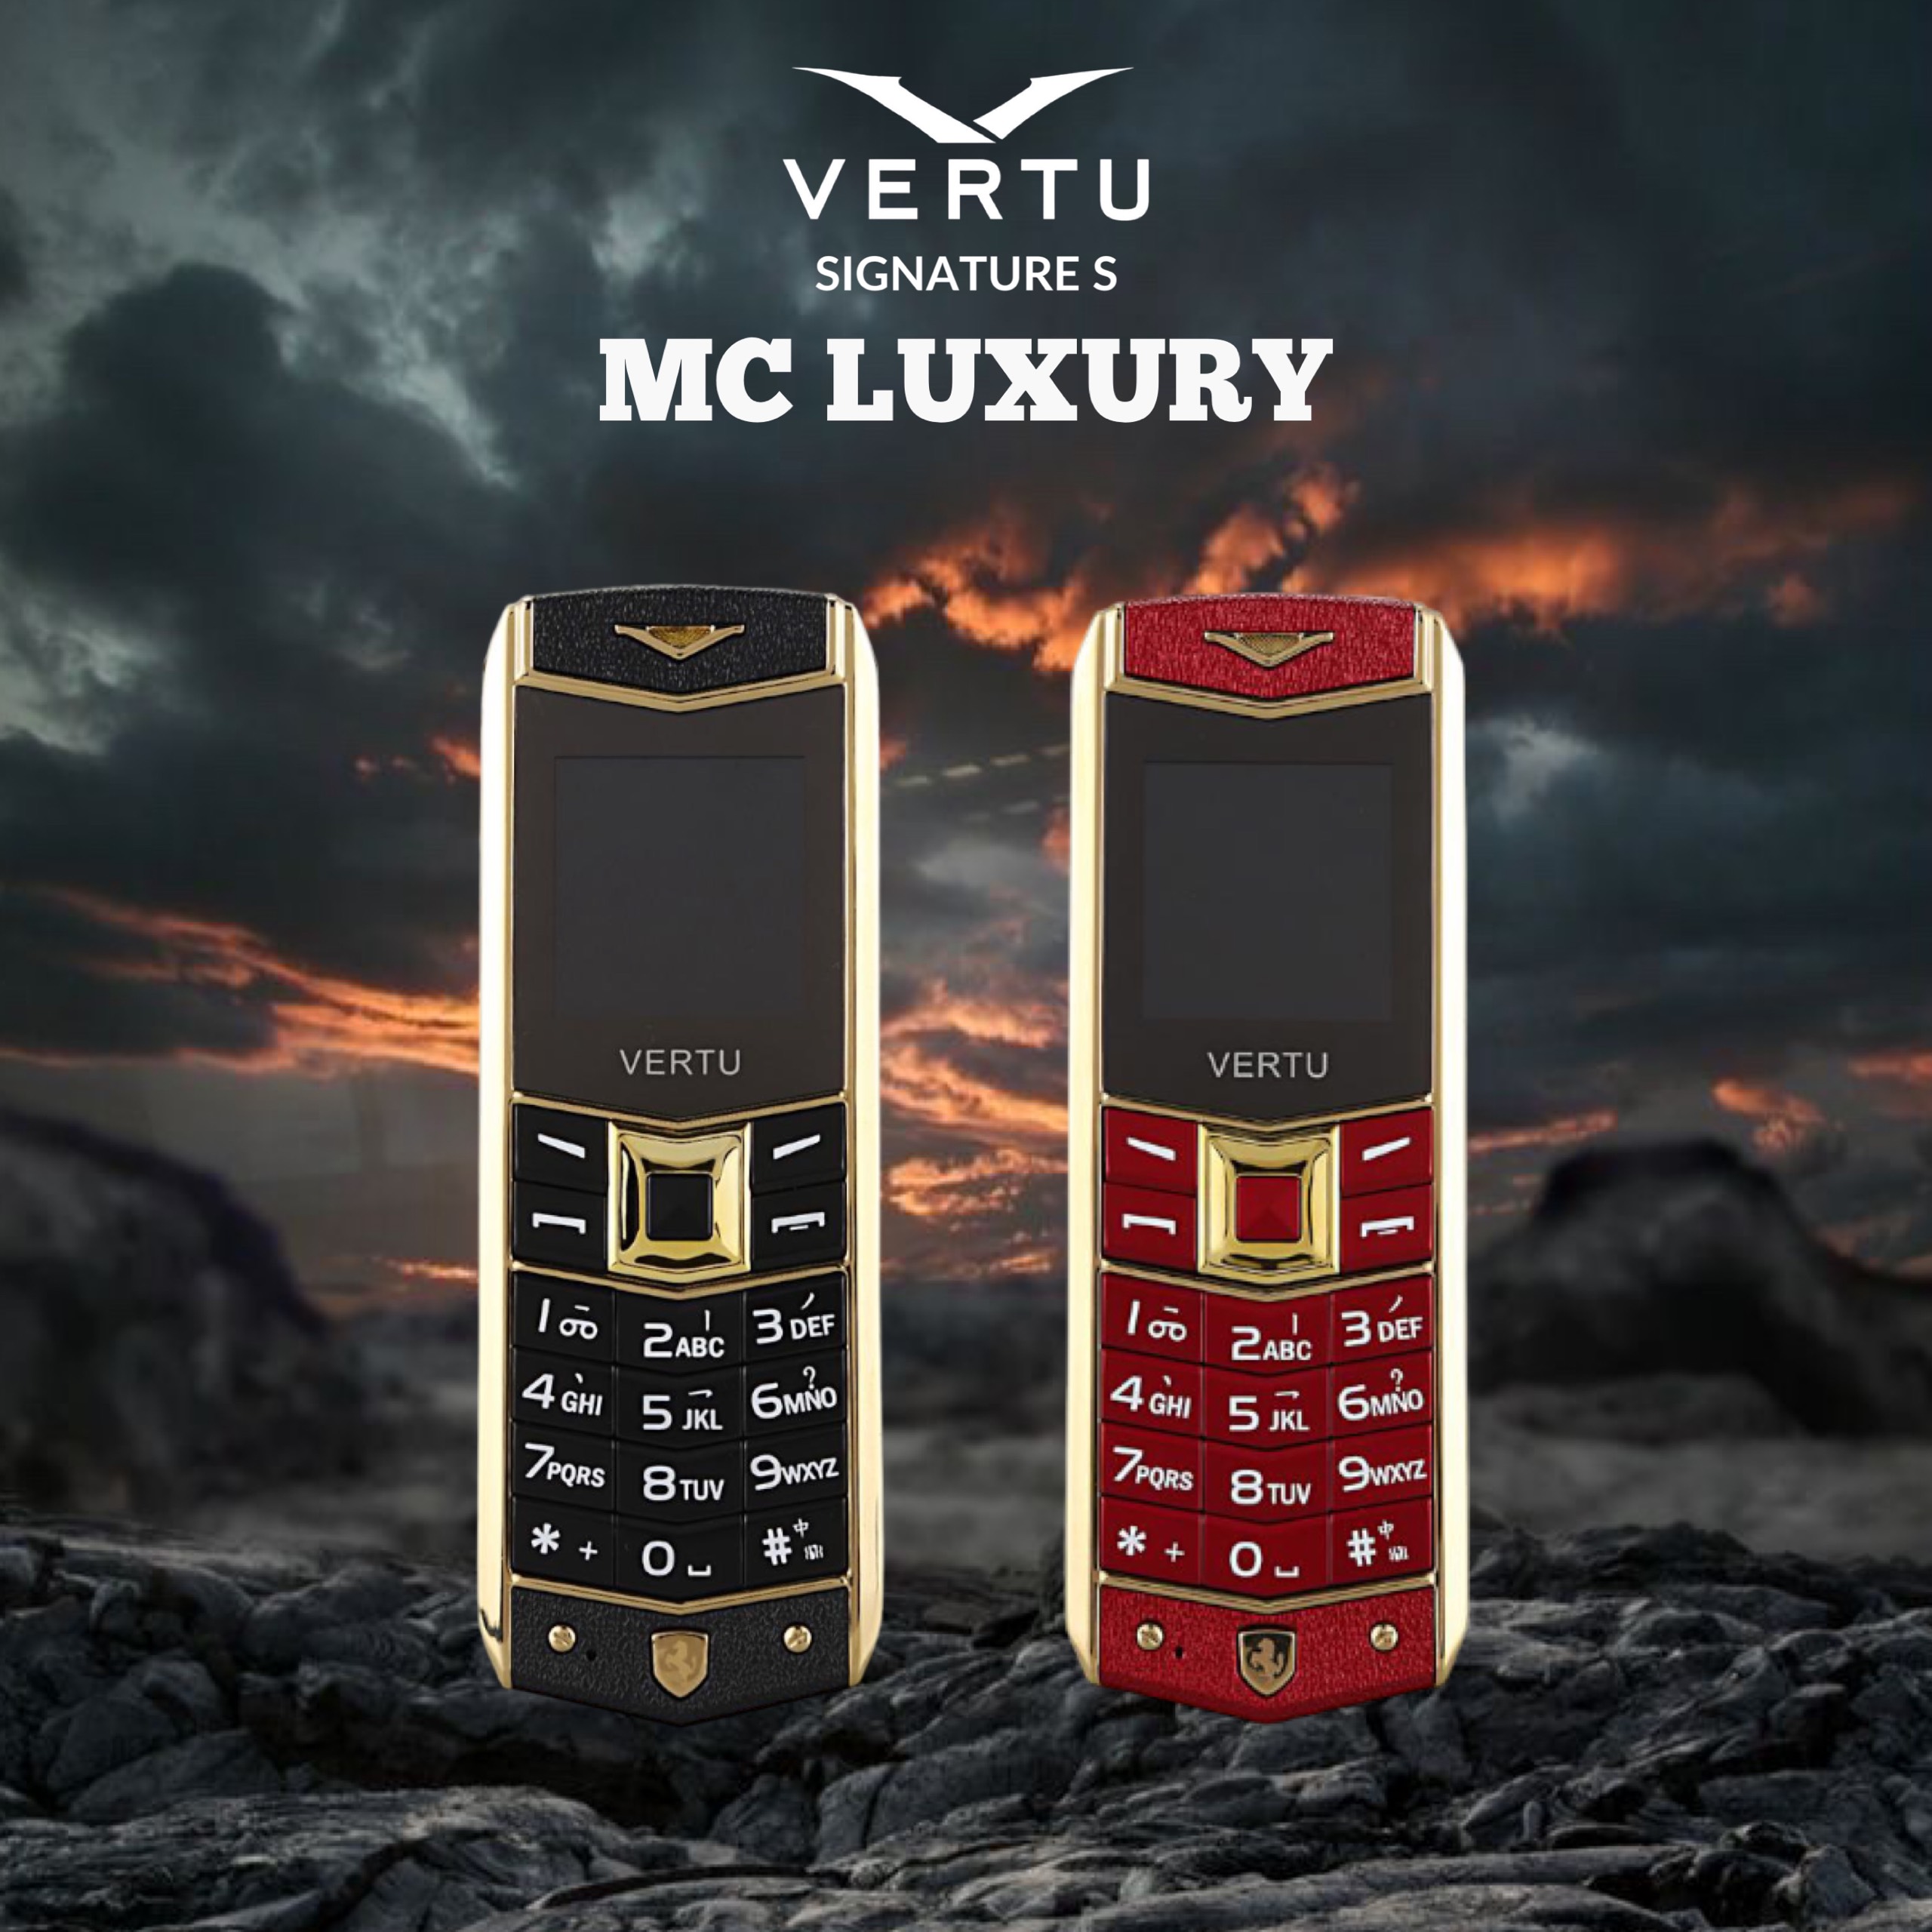 điện thoại Vertu A8 sang trọng và đẳng cấp - 2 sim fullbox